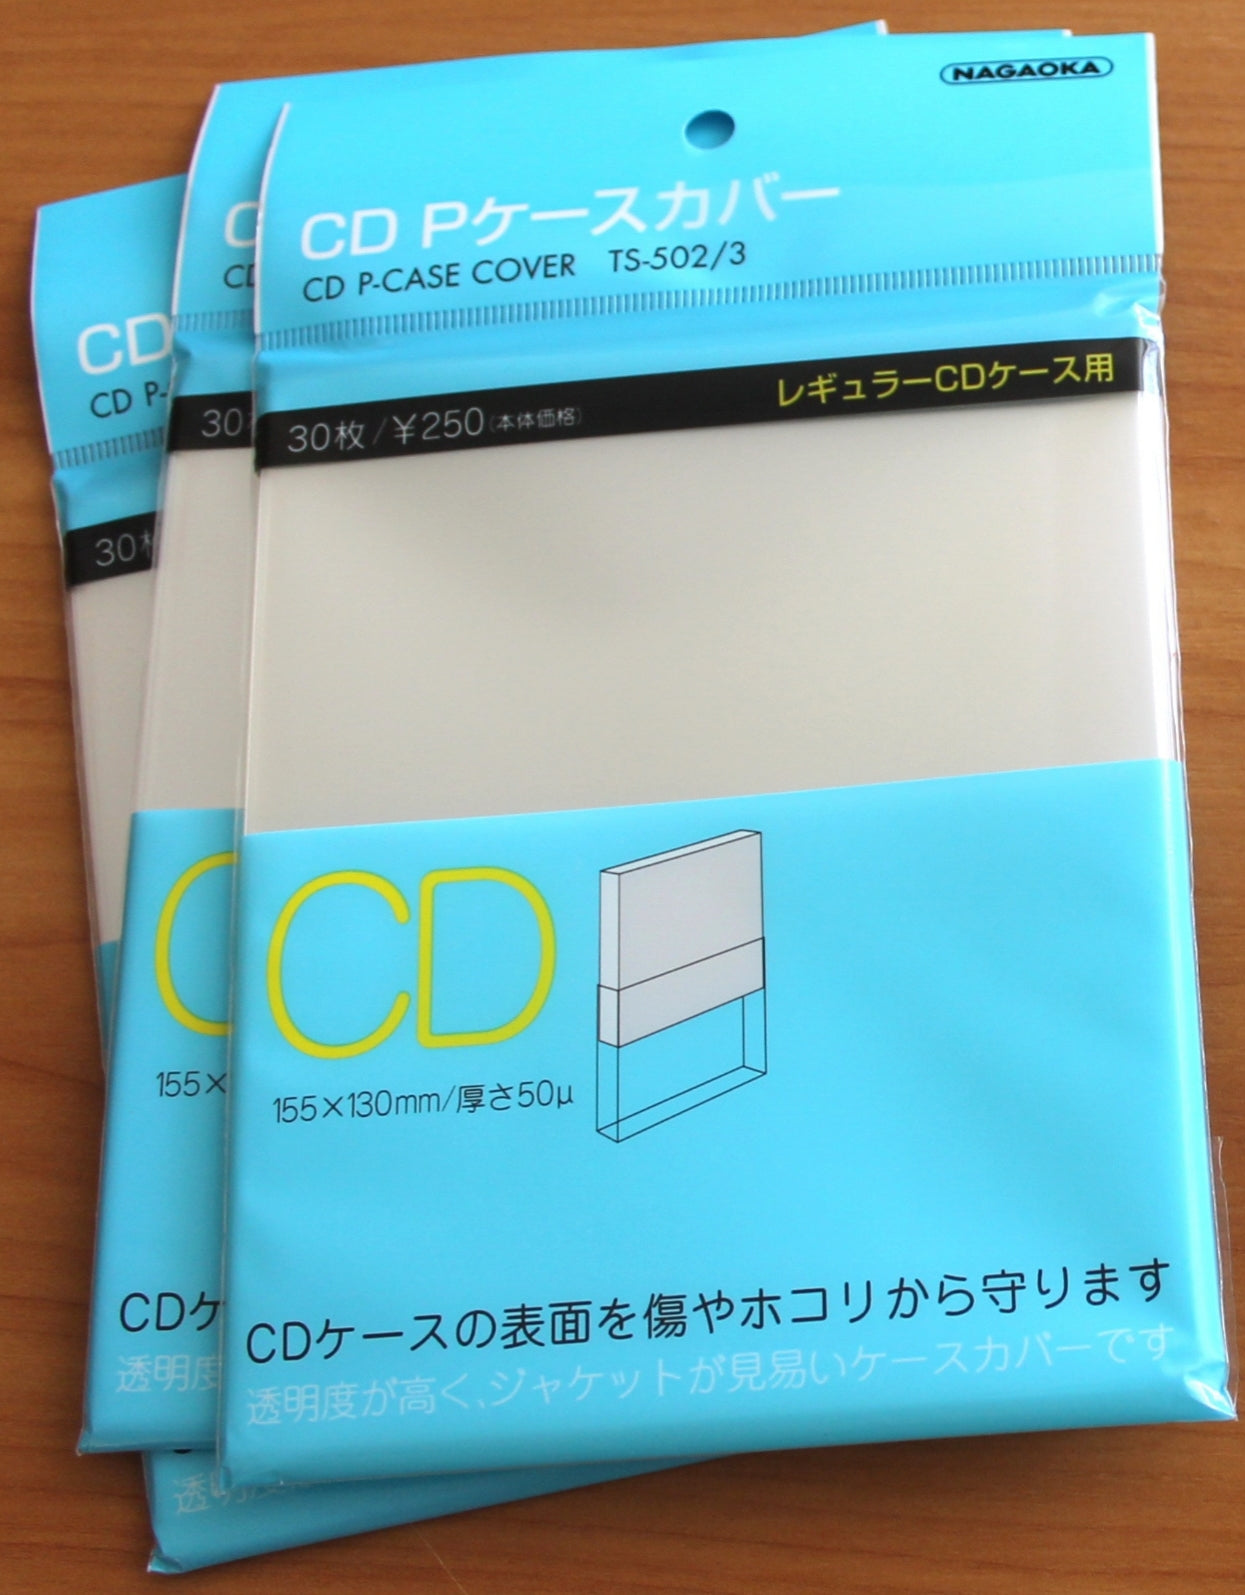 30 Nagaoka TS-502/3 Open-top Jewel CD Sleeves